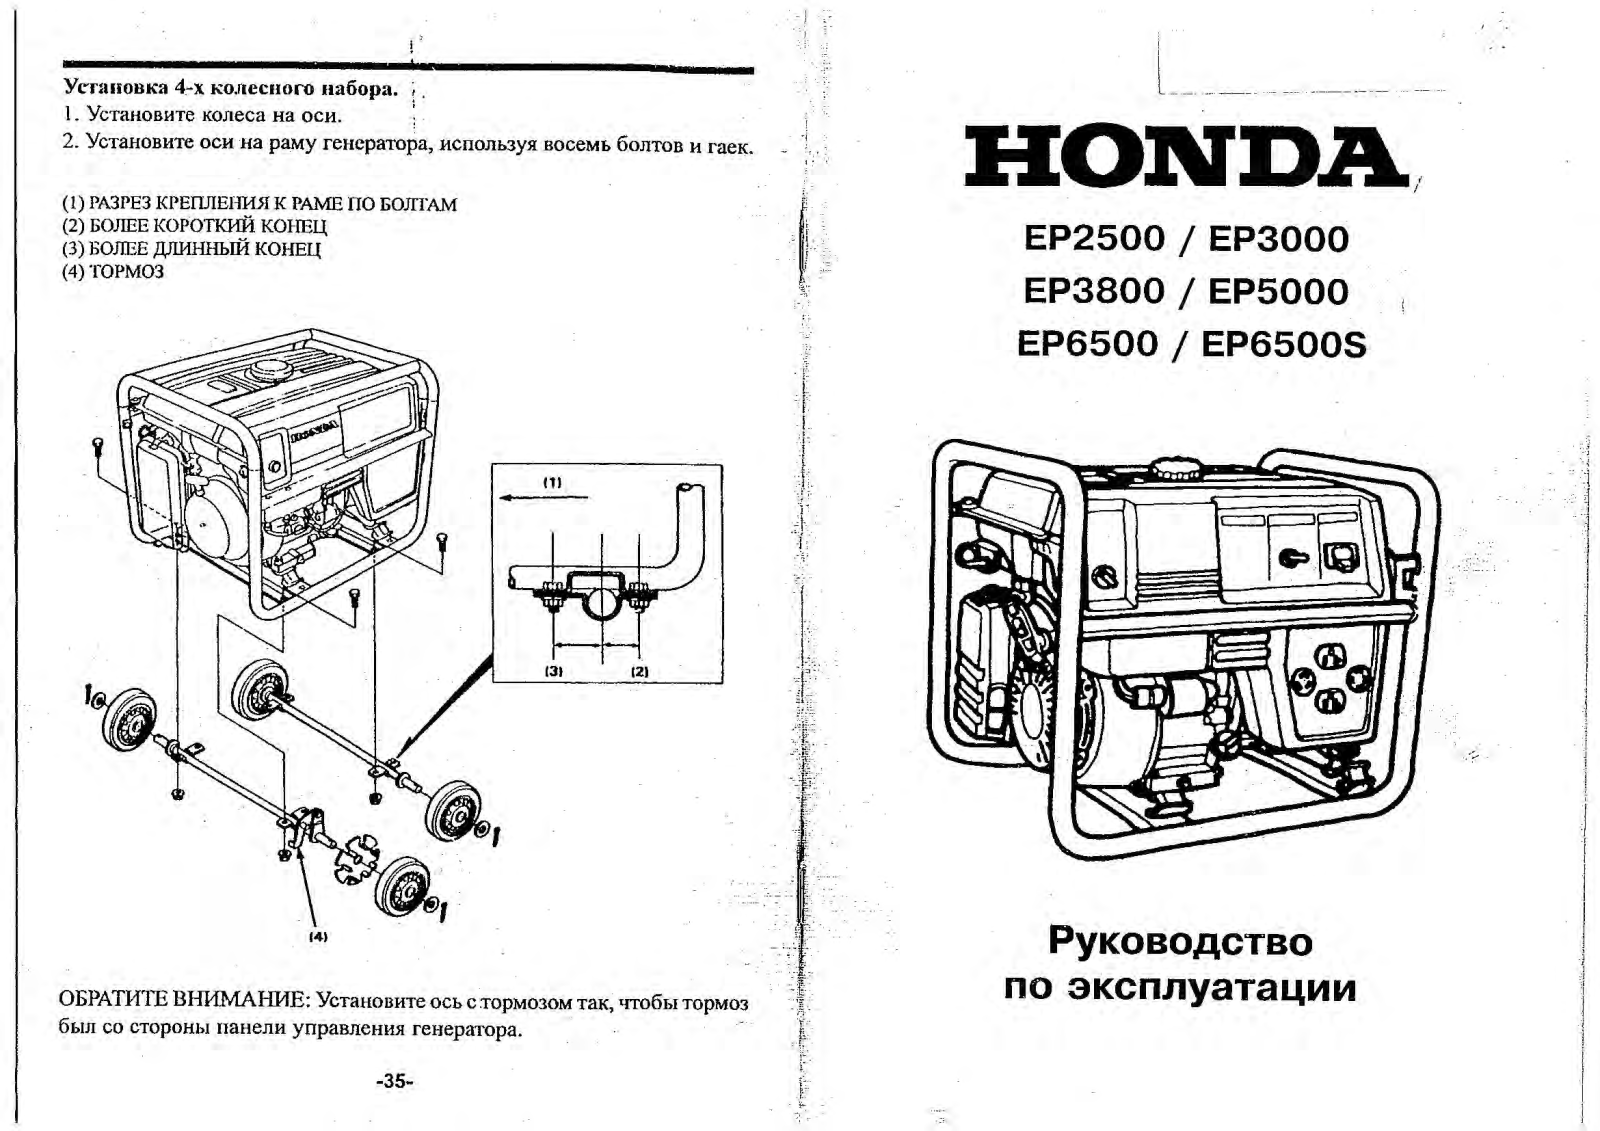 Honda EP2500 User Manual